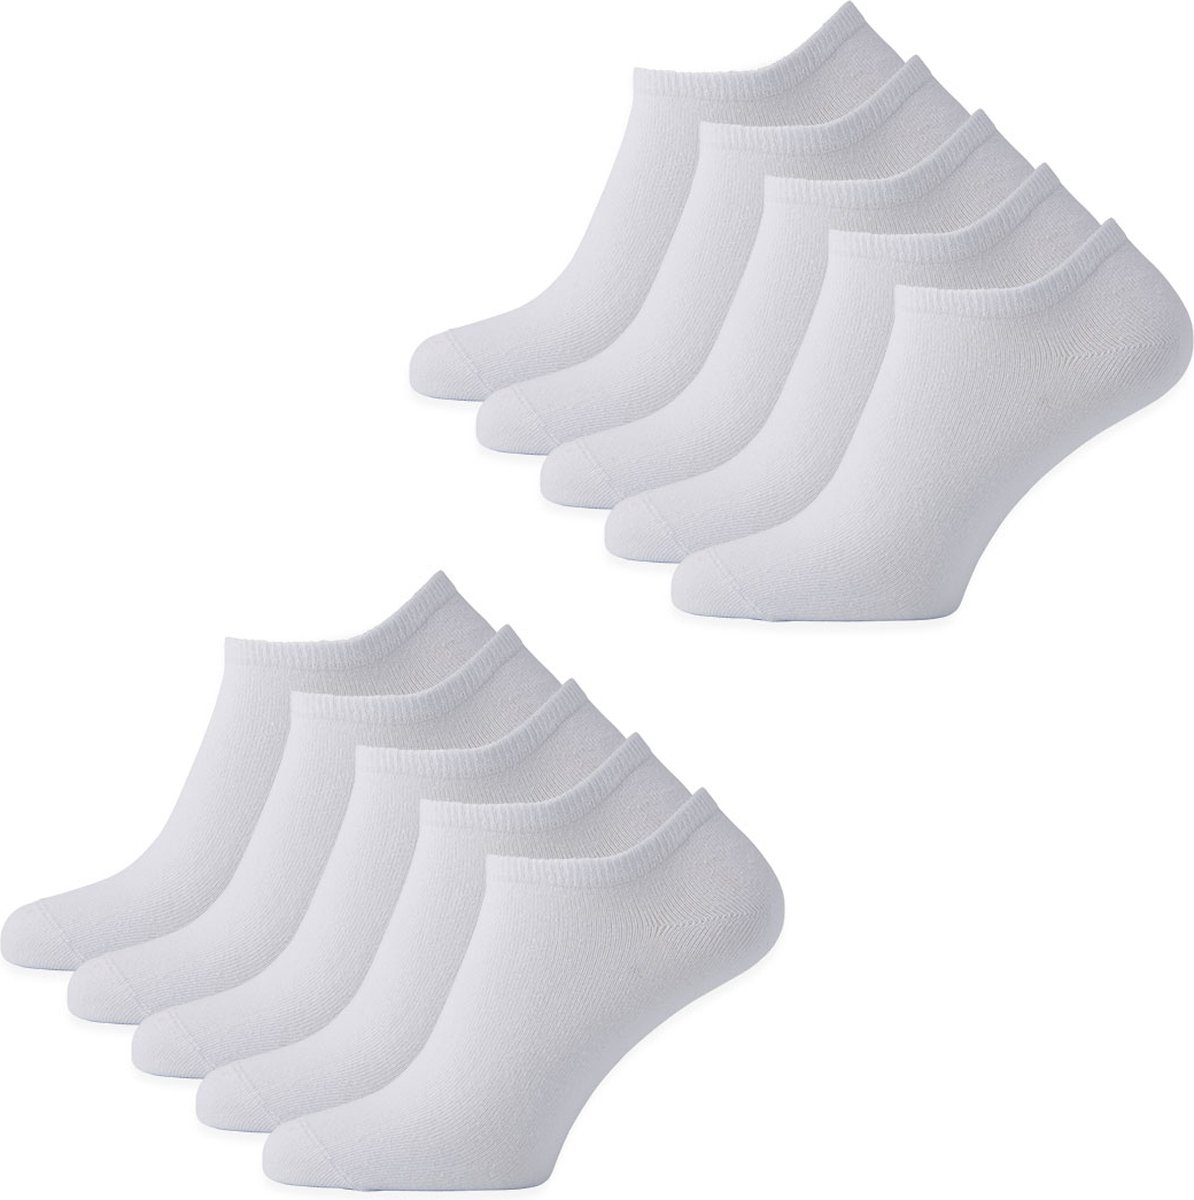 Sokjes.nl® Enkelsokken - 10 paar - Wit/zwart - 43/46 - naadloos - Voordeelverpakking